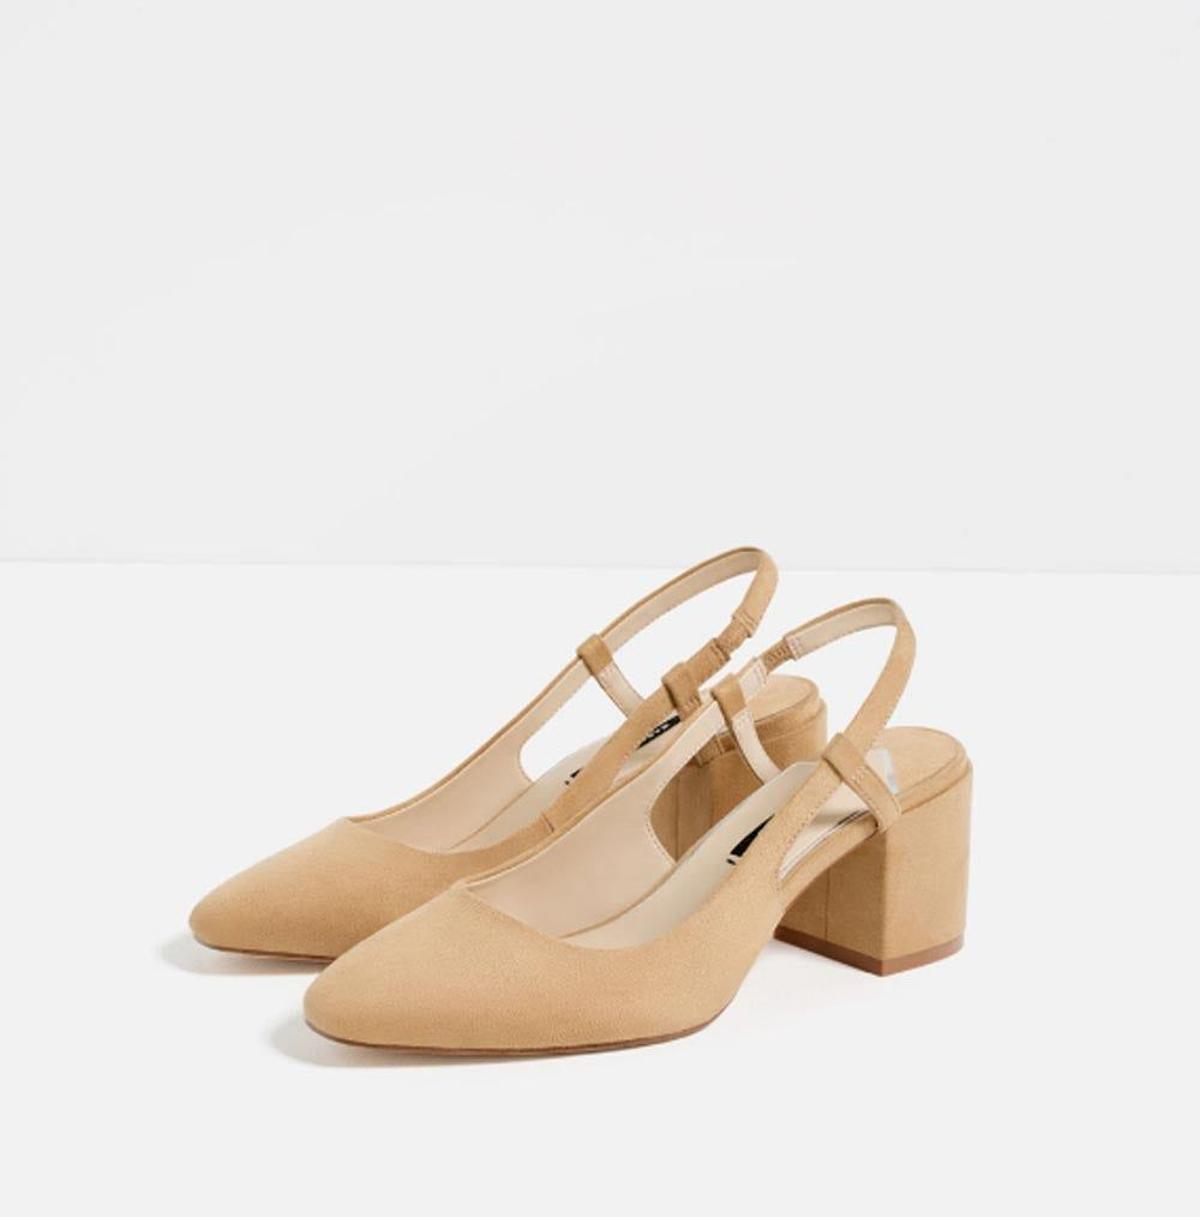 Zapatos de tacón destalonados de Zara. (Precio: 15, 99 euros)